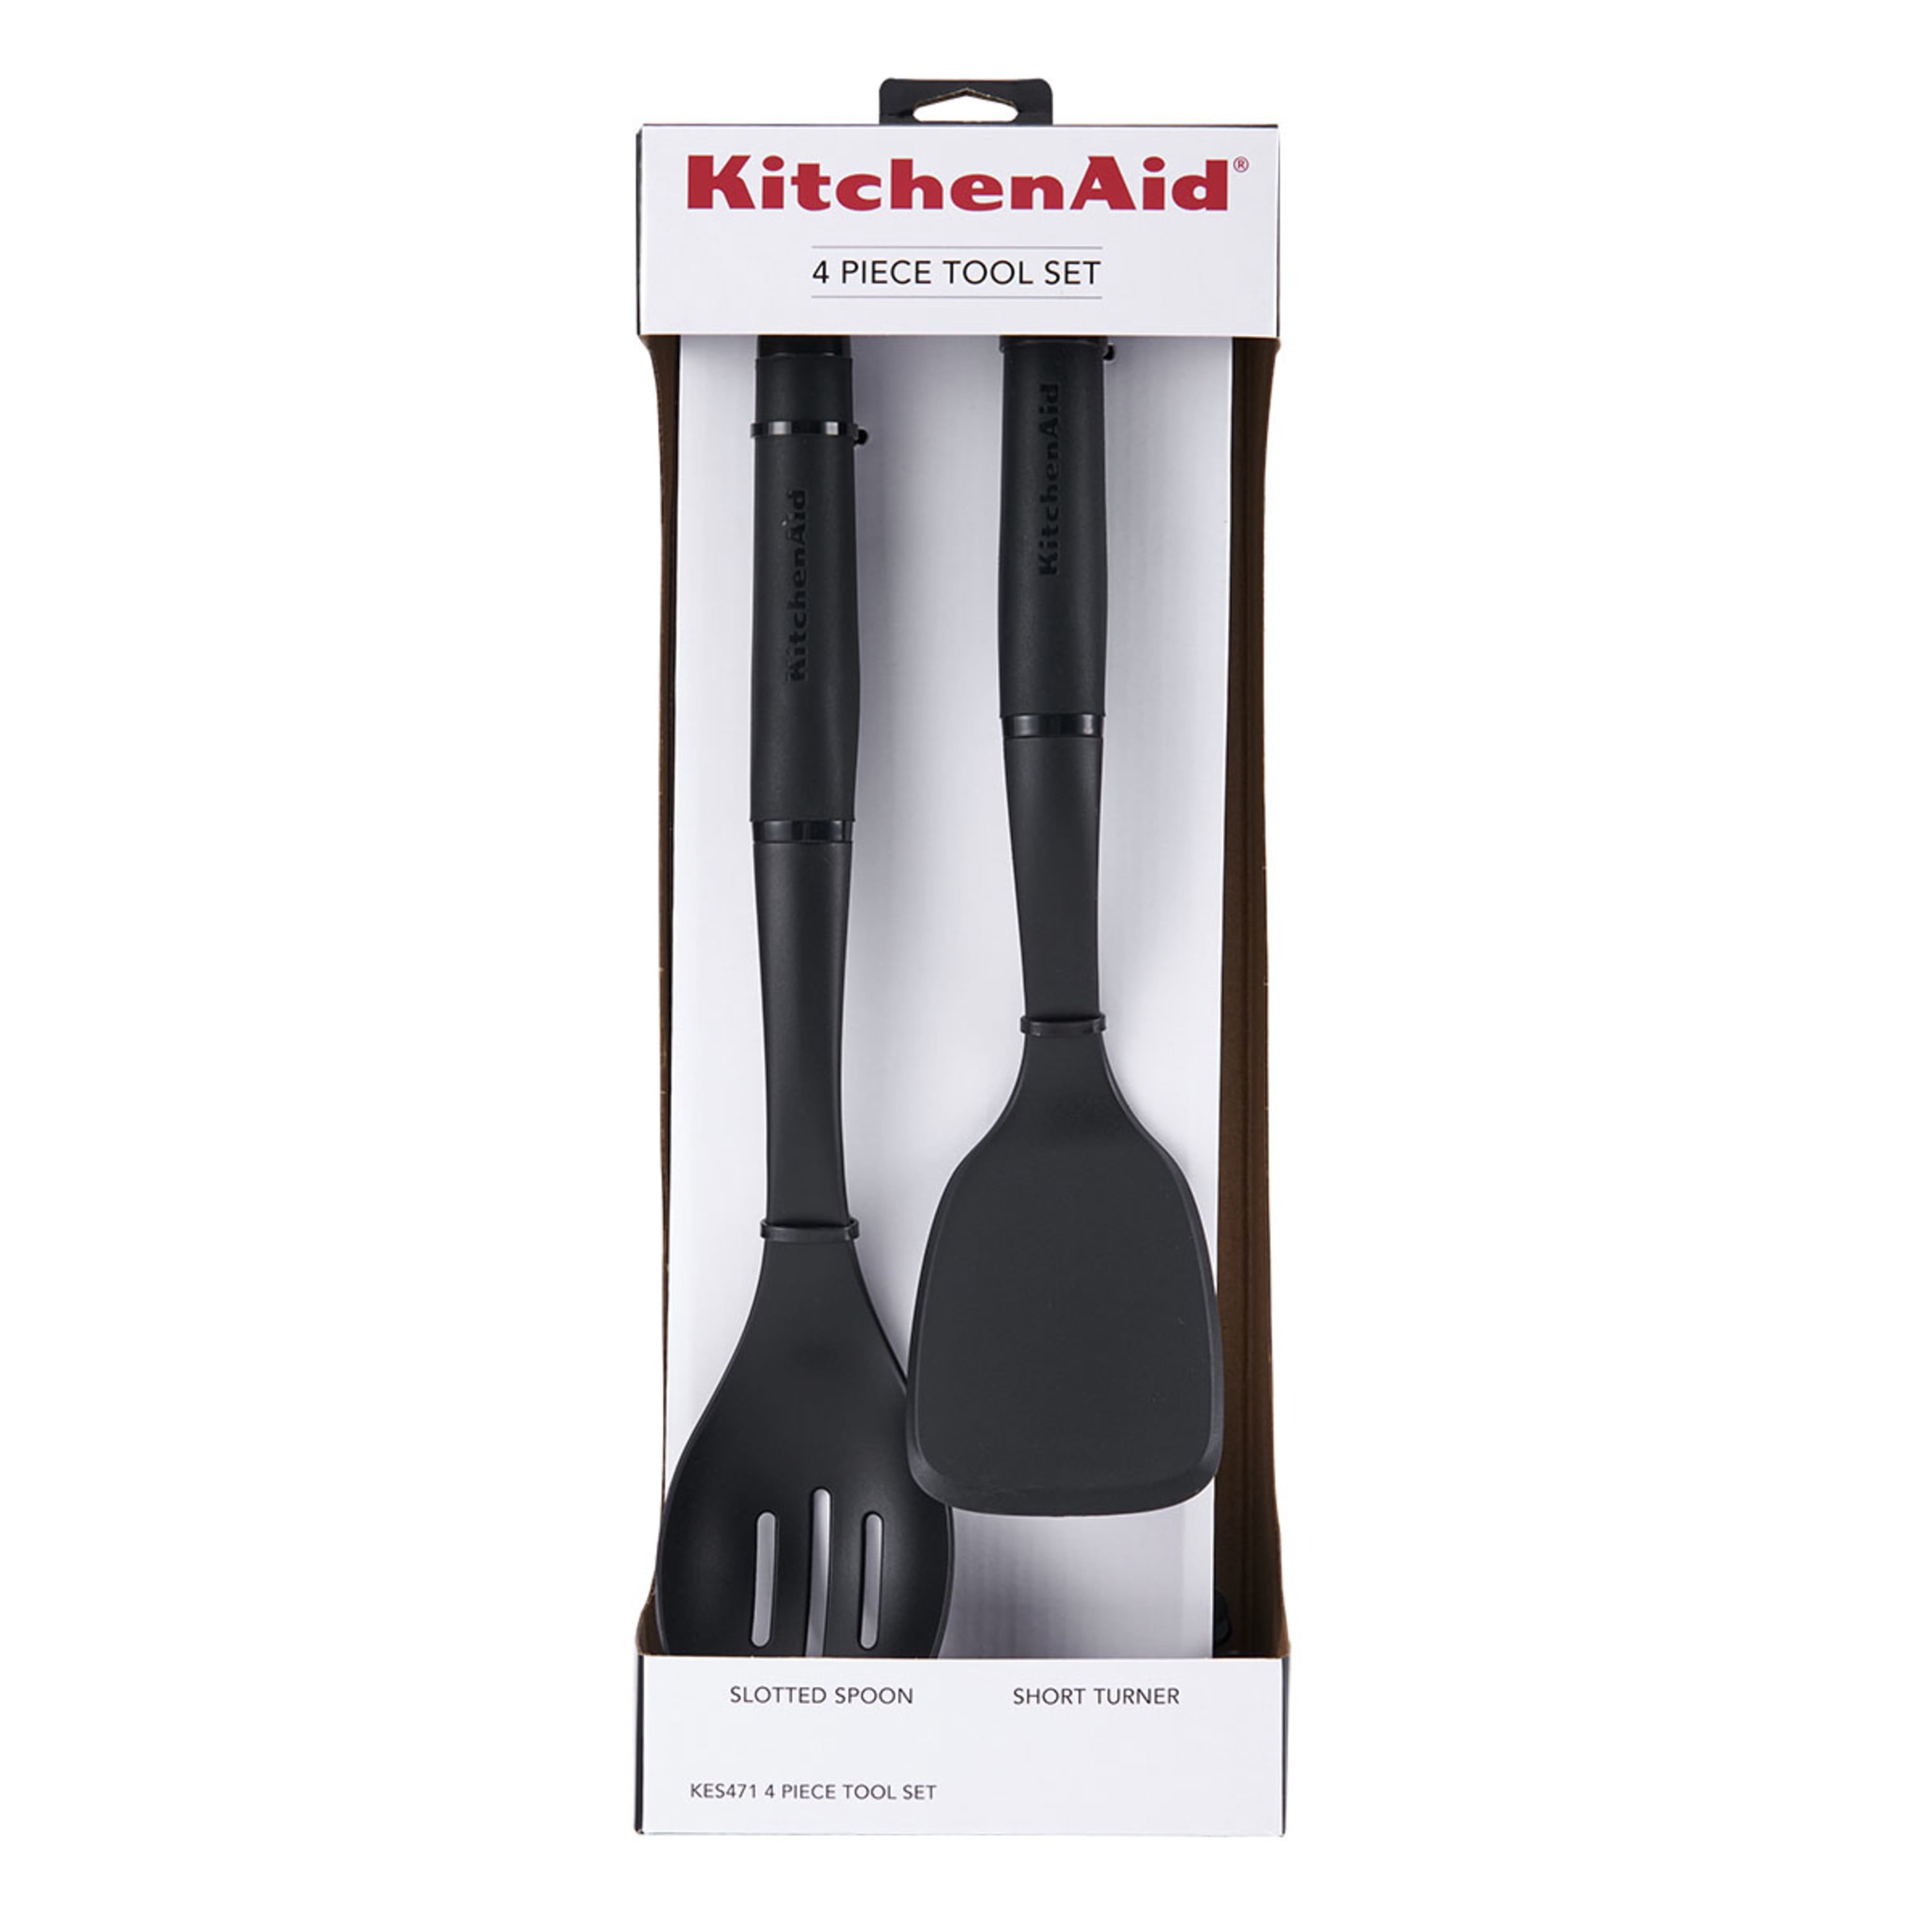 KitchenAid, Kitchen, Assorted Kitchen Cooking Utensils Set